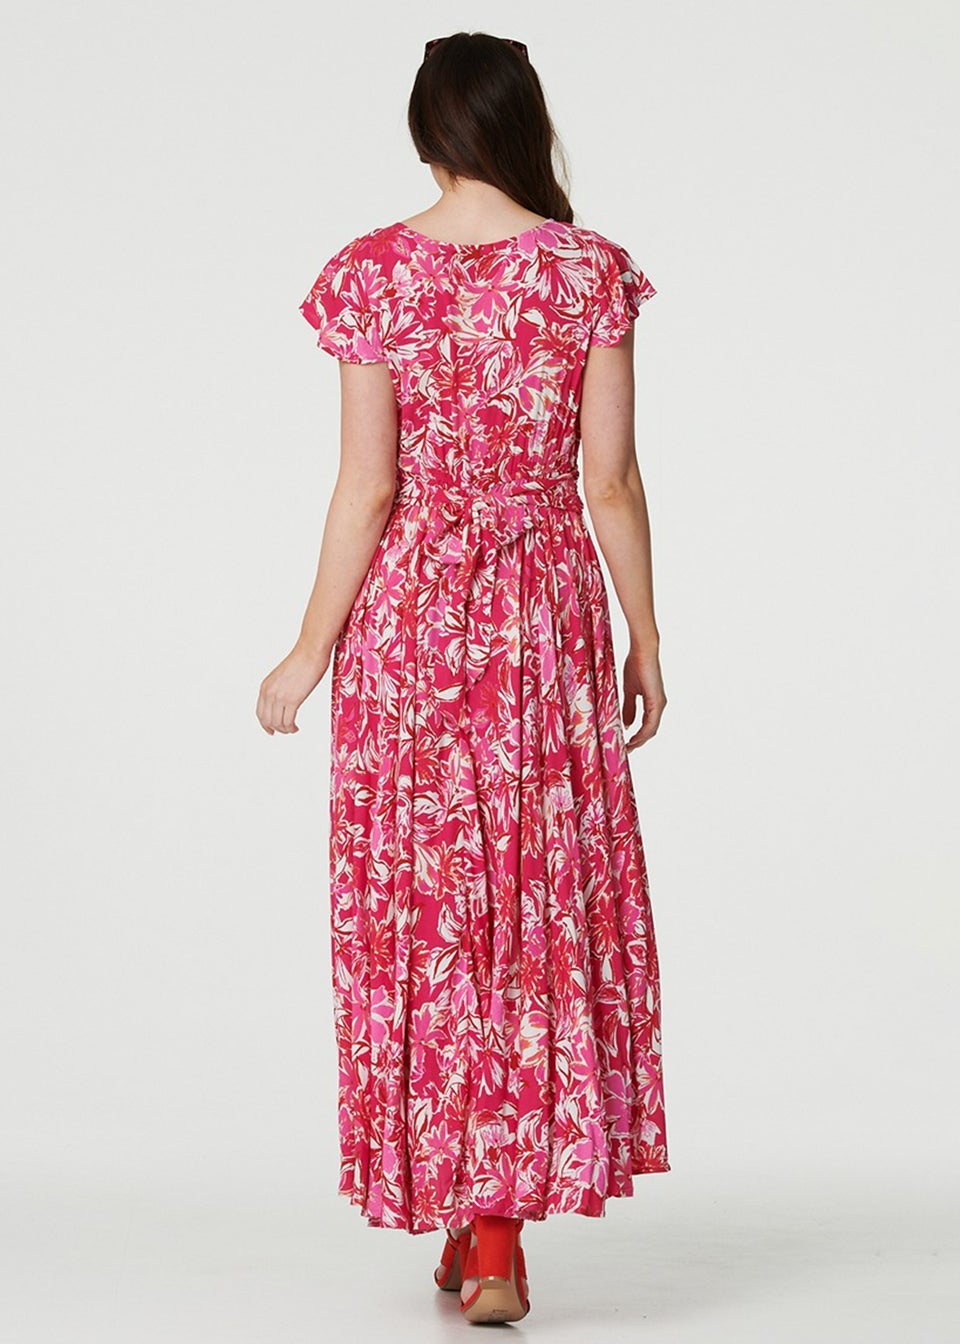 Izabel London Pink Floral Ruched V-Neck Maxi Dress